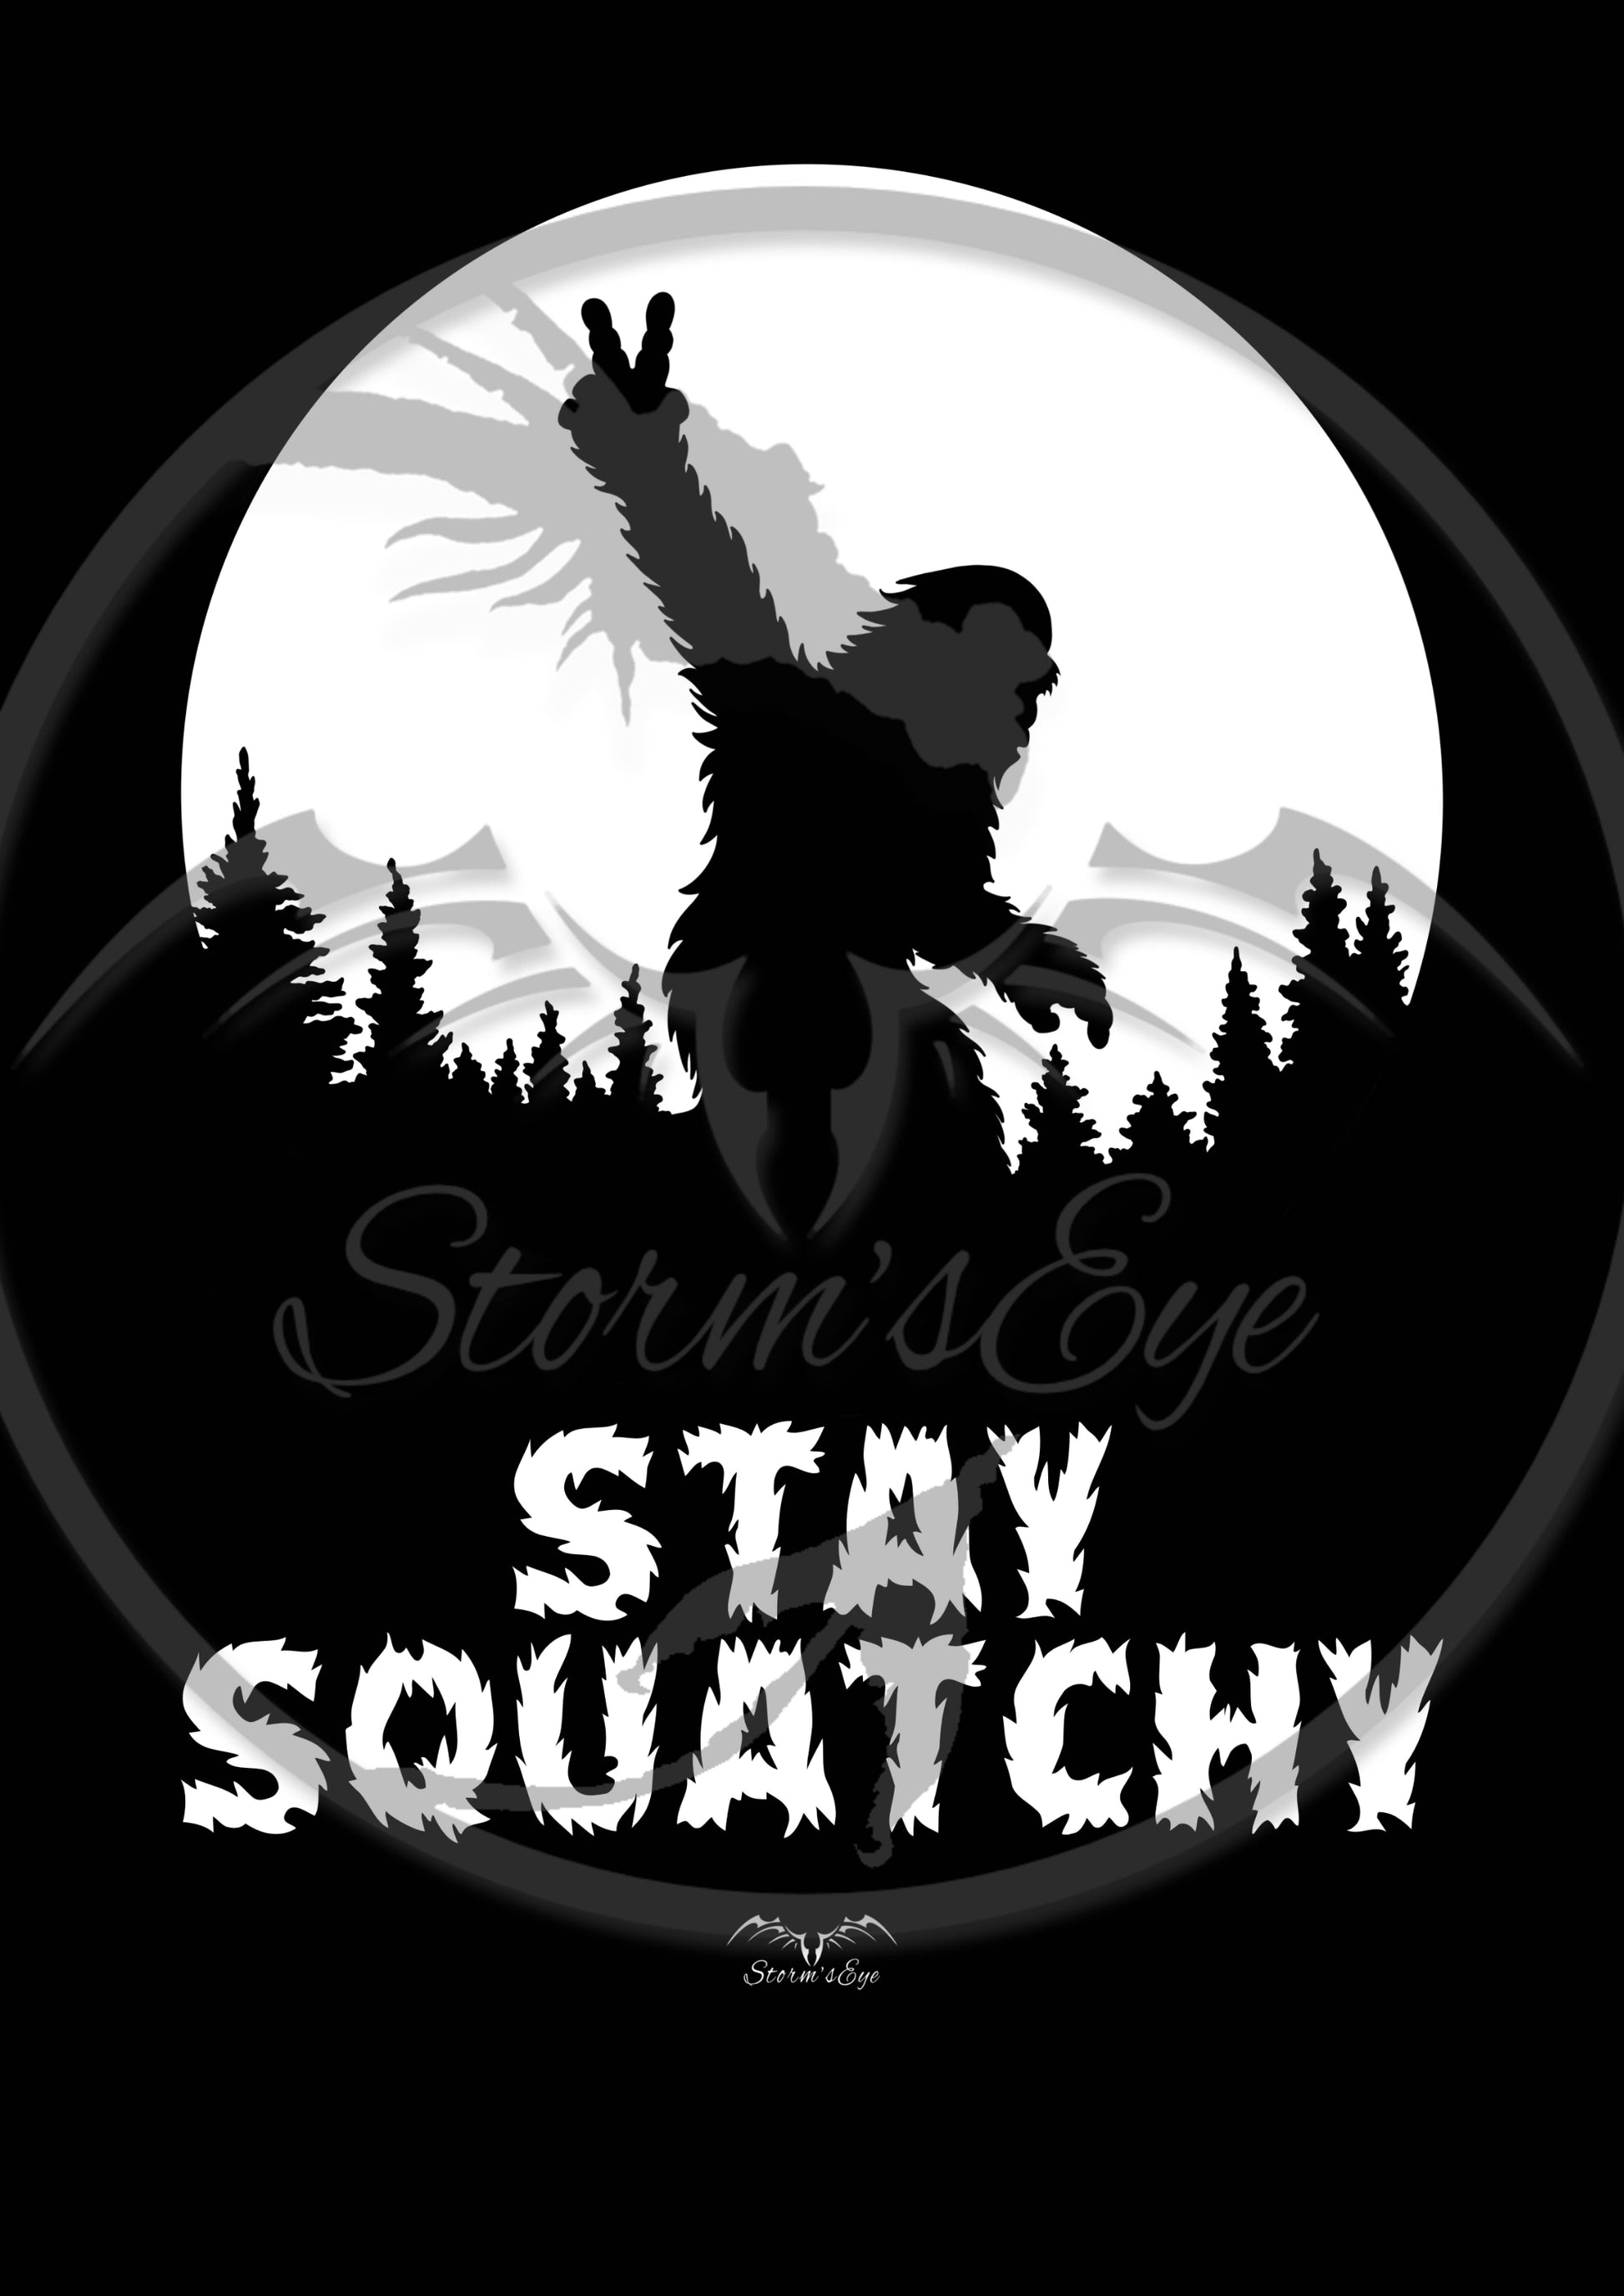 Sasquatch / Bigfoot design, by Stormseye Design